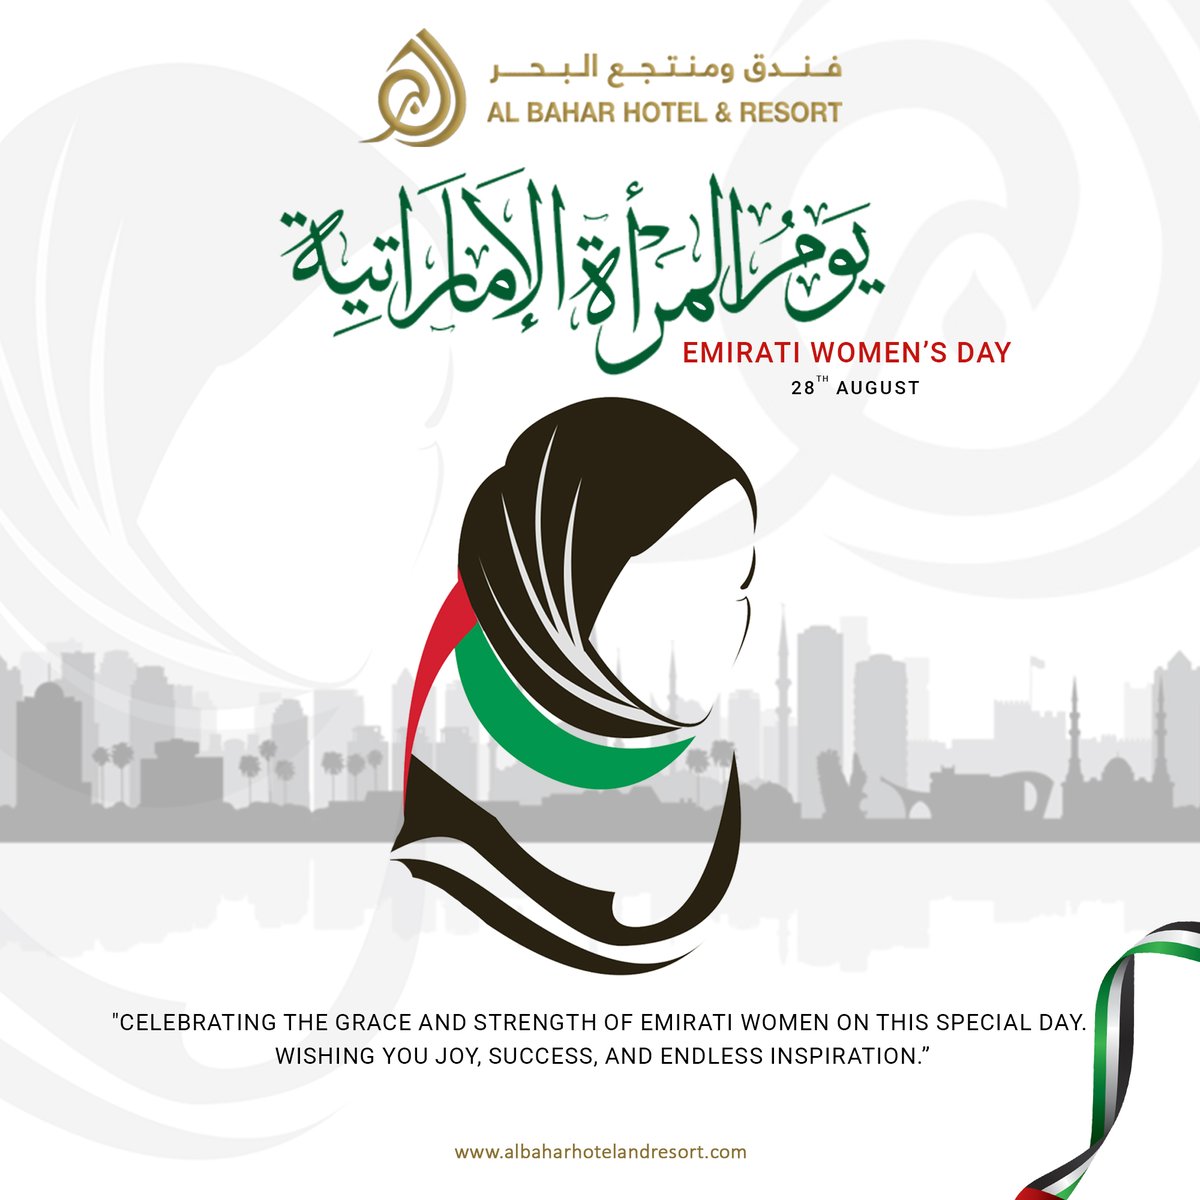 𝗛𝗮𝗽𝗽𝘆 𝗘𝗺𝗶𝗿𝗮𝘁𝗶 𝗪𝗼𝗺𝗲𝗻'𝘀 𝗗𝗮𝘆! We are honored to salute the women who shape our world.
#AlBaharHotelandResort #EmiratiWomensDay #WomenEmpowerment #UAEWomen #FujairahResort  #InspiringWomen #UAEHospitality  #EmpowermentThroughUnity  #EmiratiPride #WomensDay2023